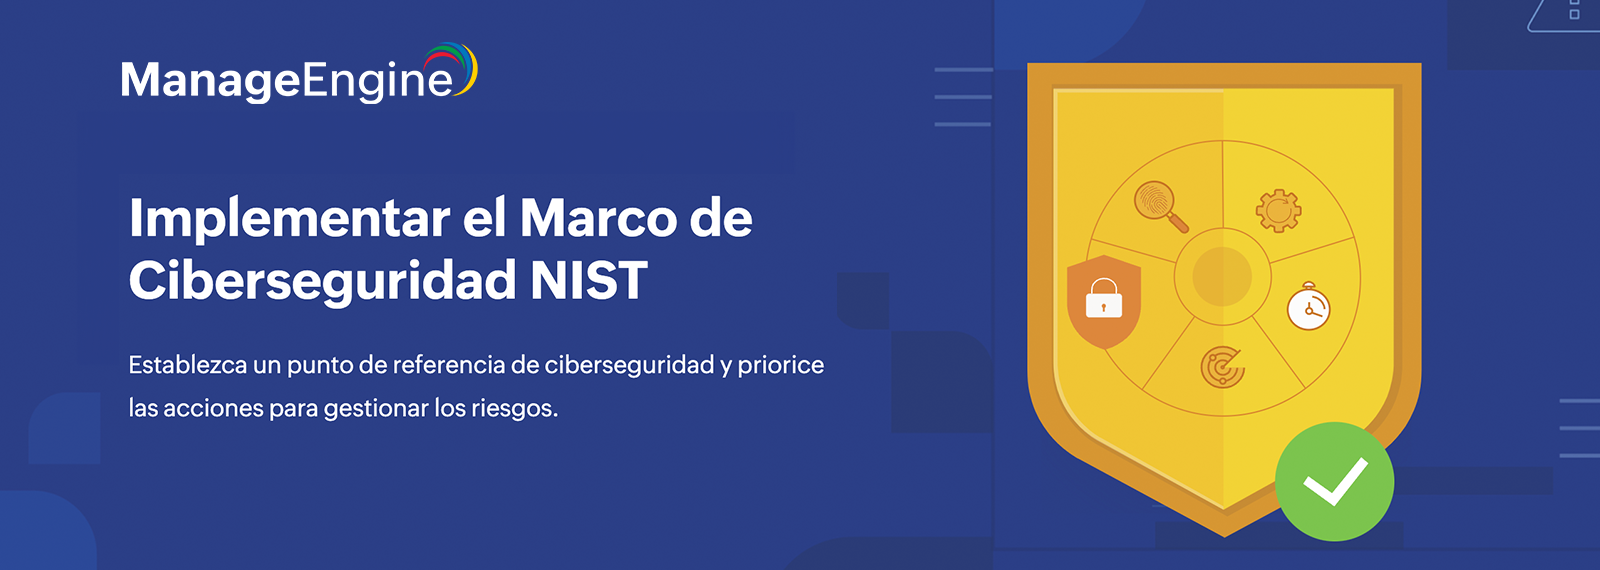 Marco de Ciberseguridad NIST, 
un aliado para proteger su organización